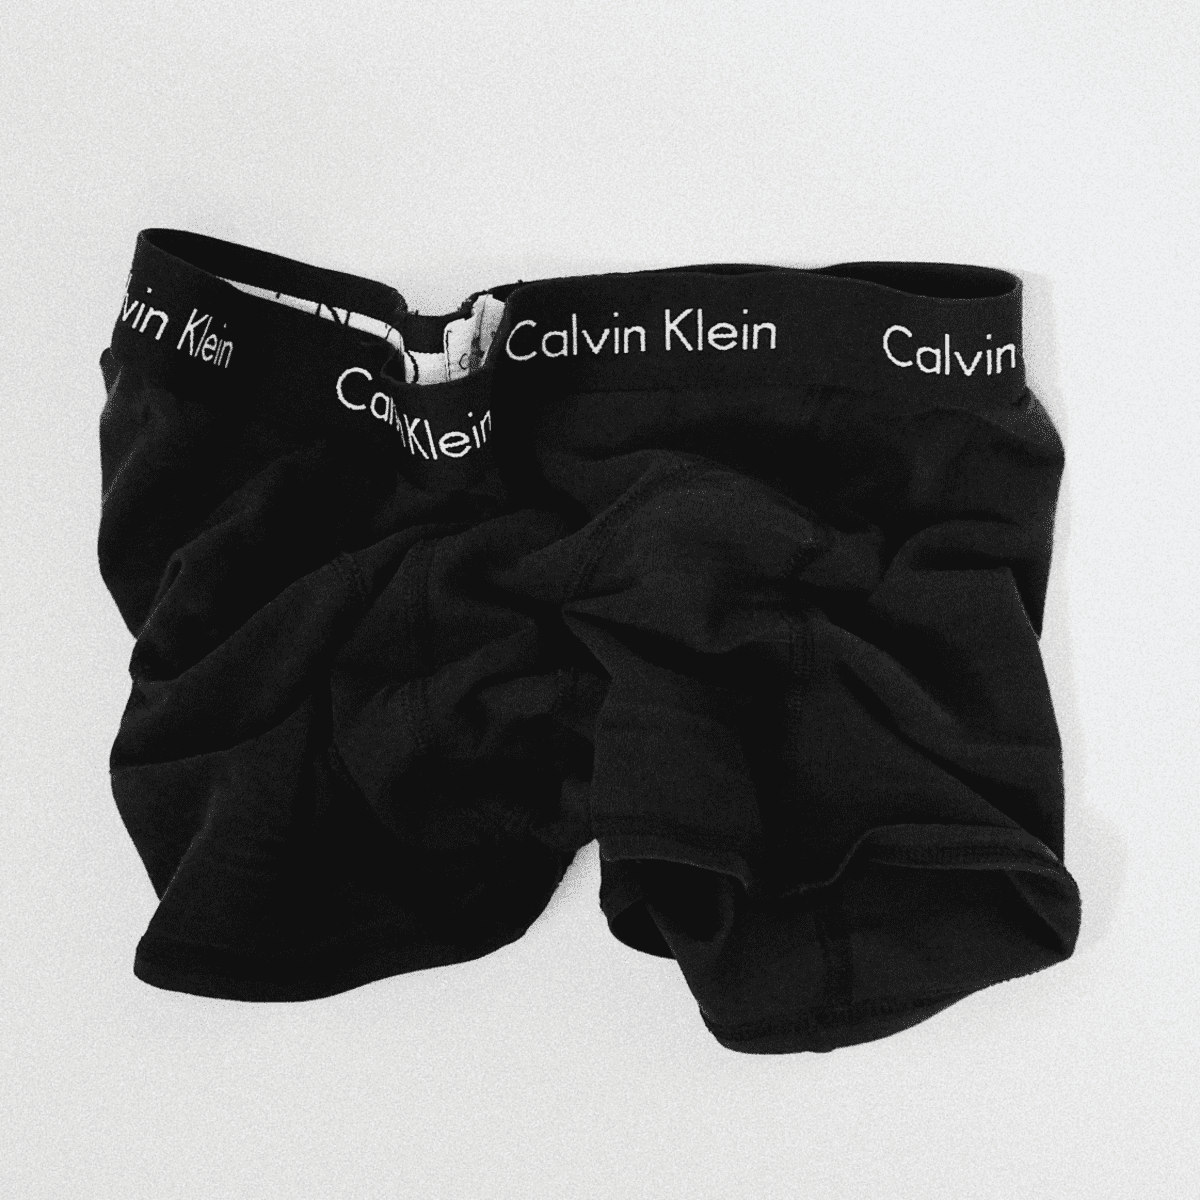 Men in Lingerie: Panties for Men - Bellatory